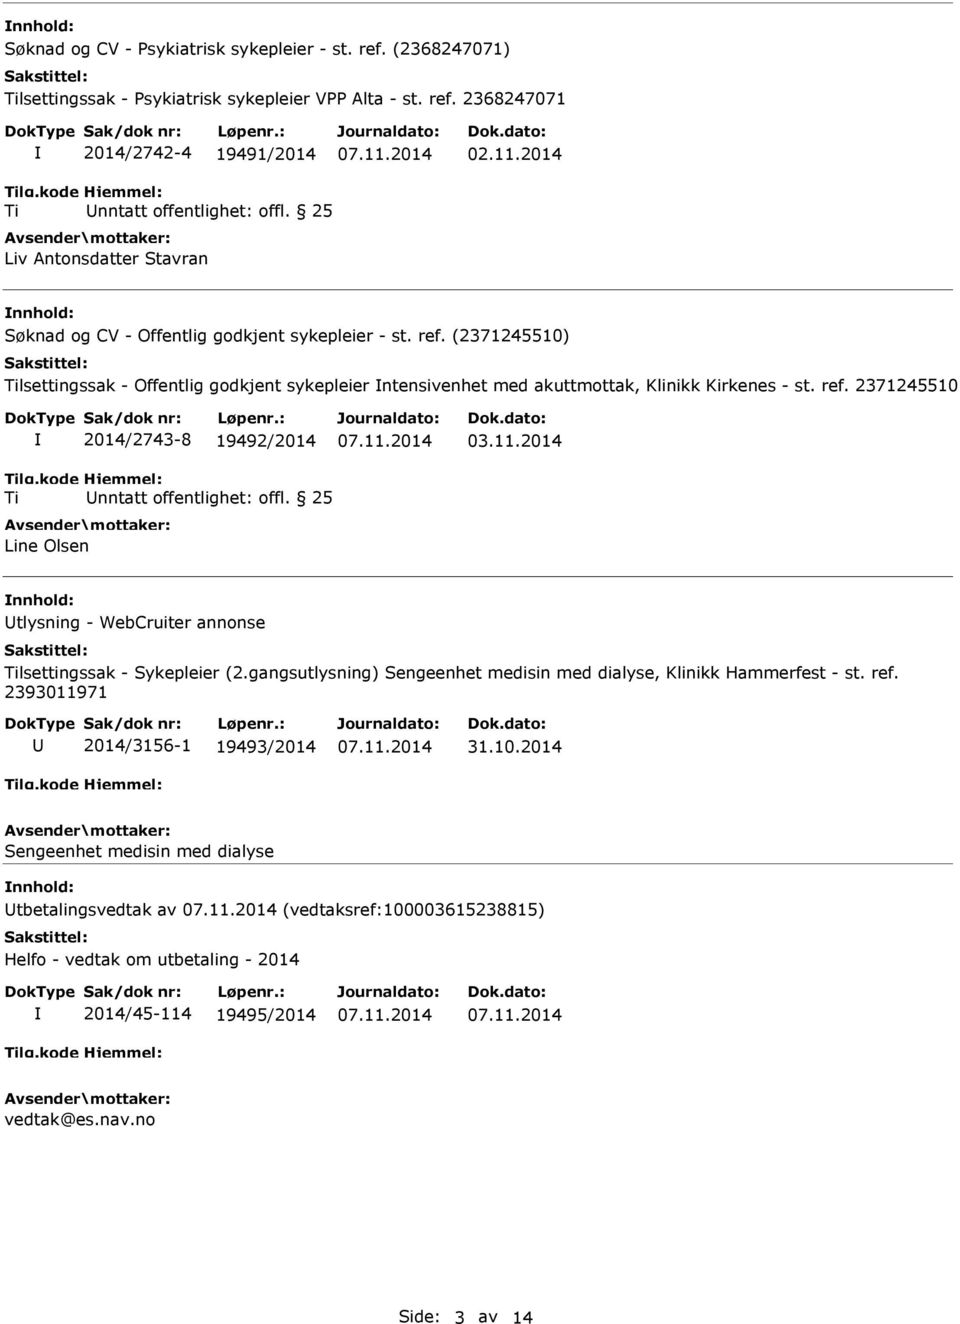 gangsutlysning) Sengeenhet medisin med dialyse, Klinikk Hammerfest - st. ref. 2393011971 2014/3156-1 19493/2014 31.10.